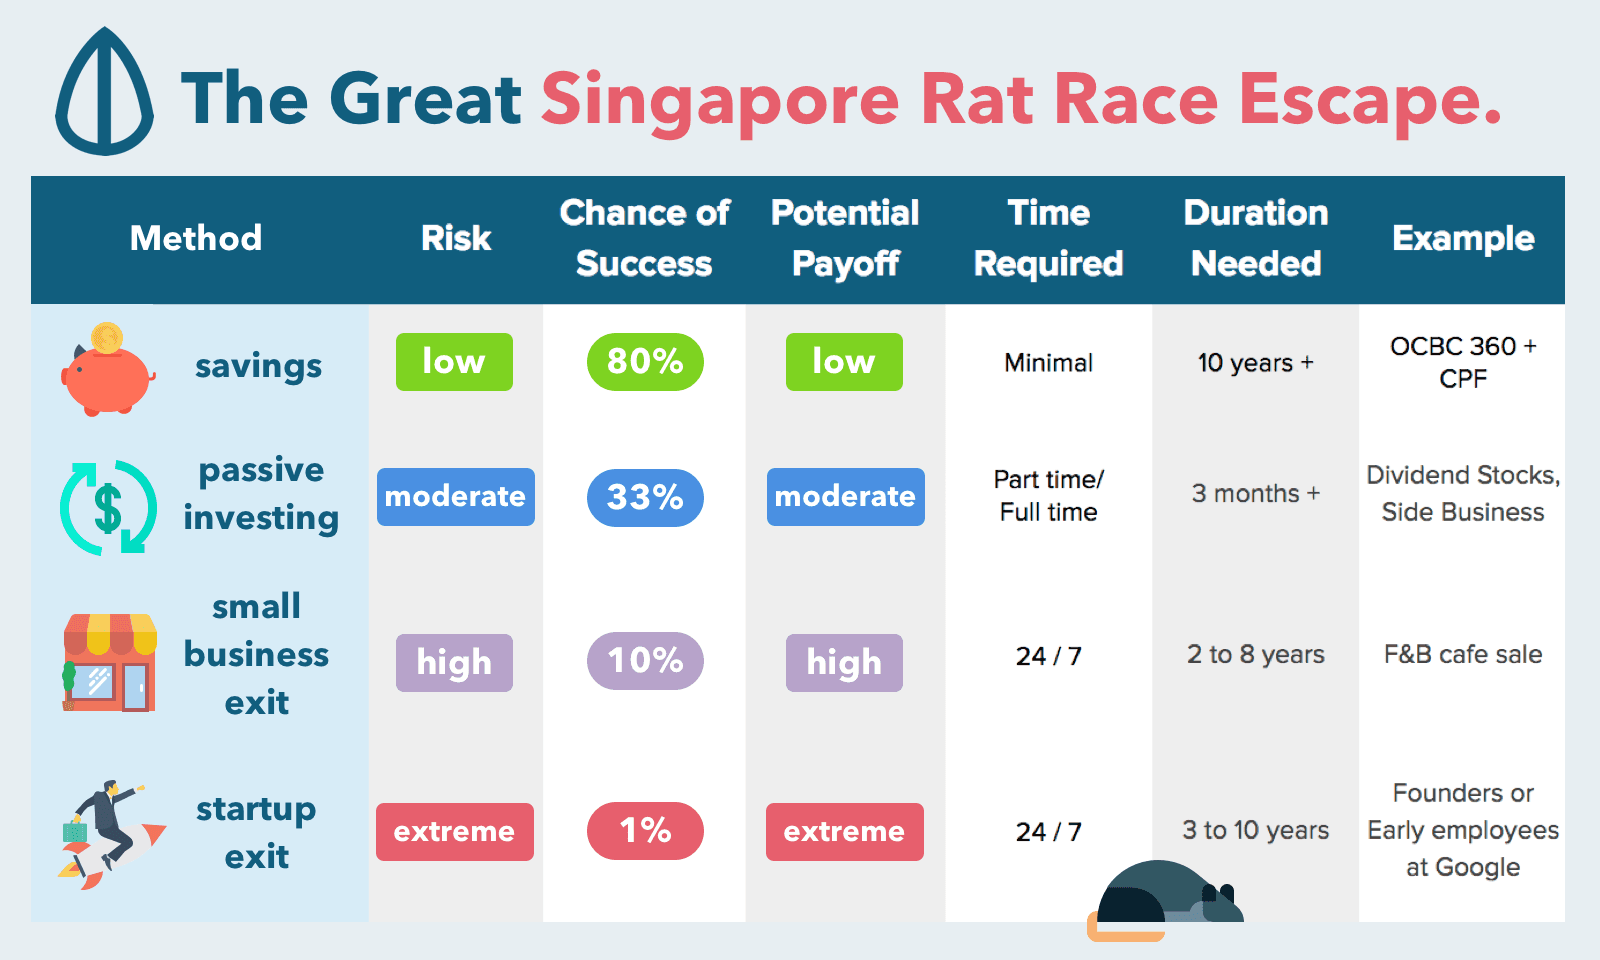 Seedly Singapore Rat Race Escape